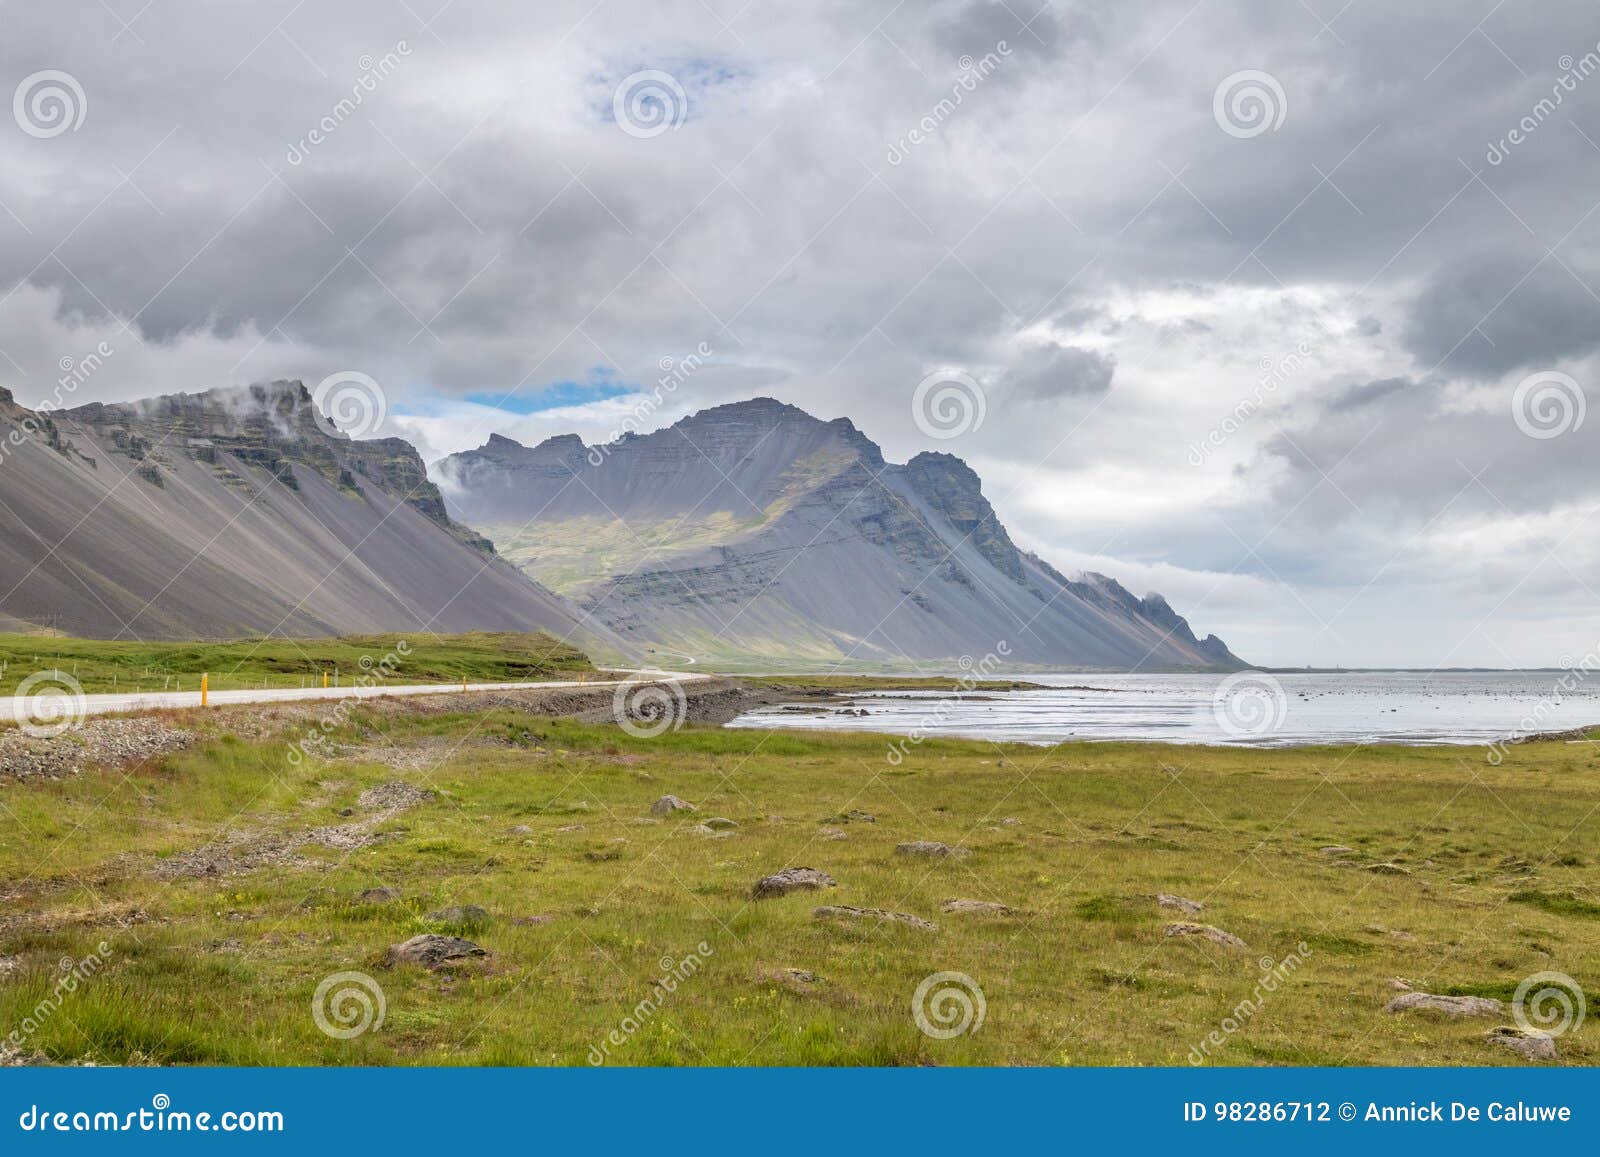 Island, Europa, ein schönes zu entdecken Land